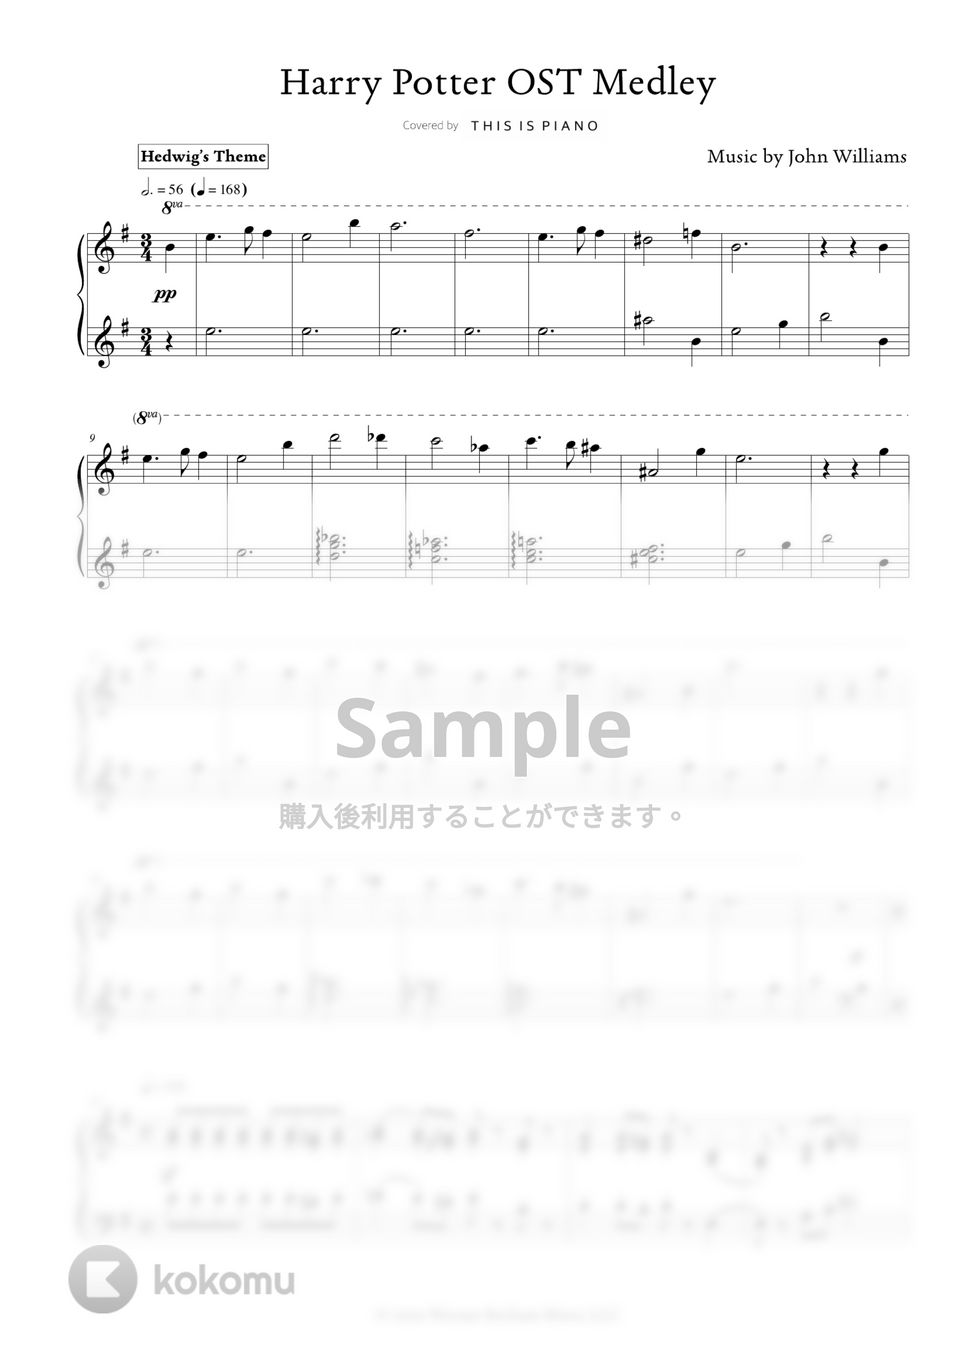 クリスマスキャロル - ハリーポッターメドレー by THIS IS PIANO